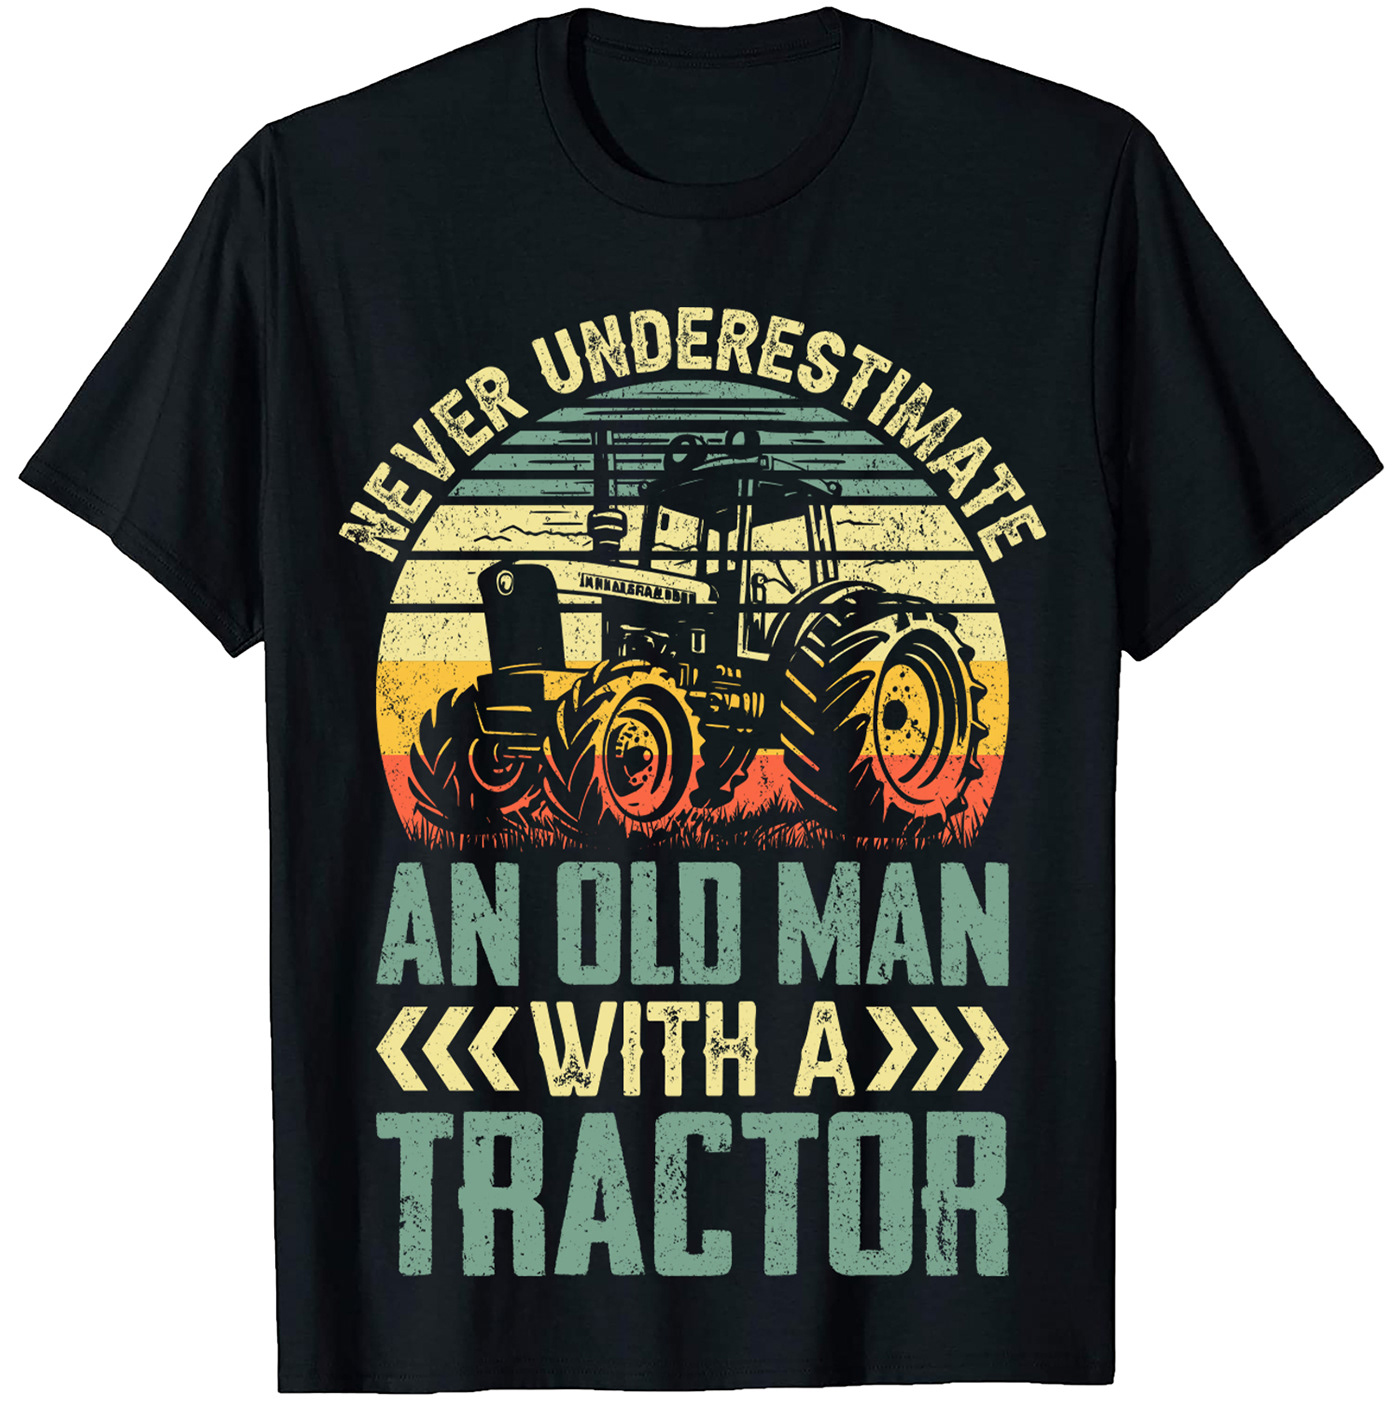 Vintage T-Shirt Design
